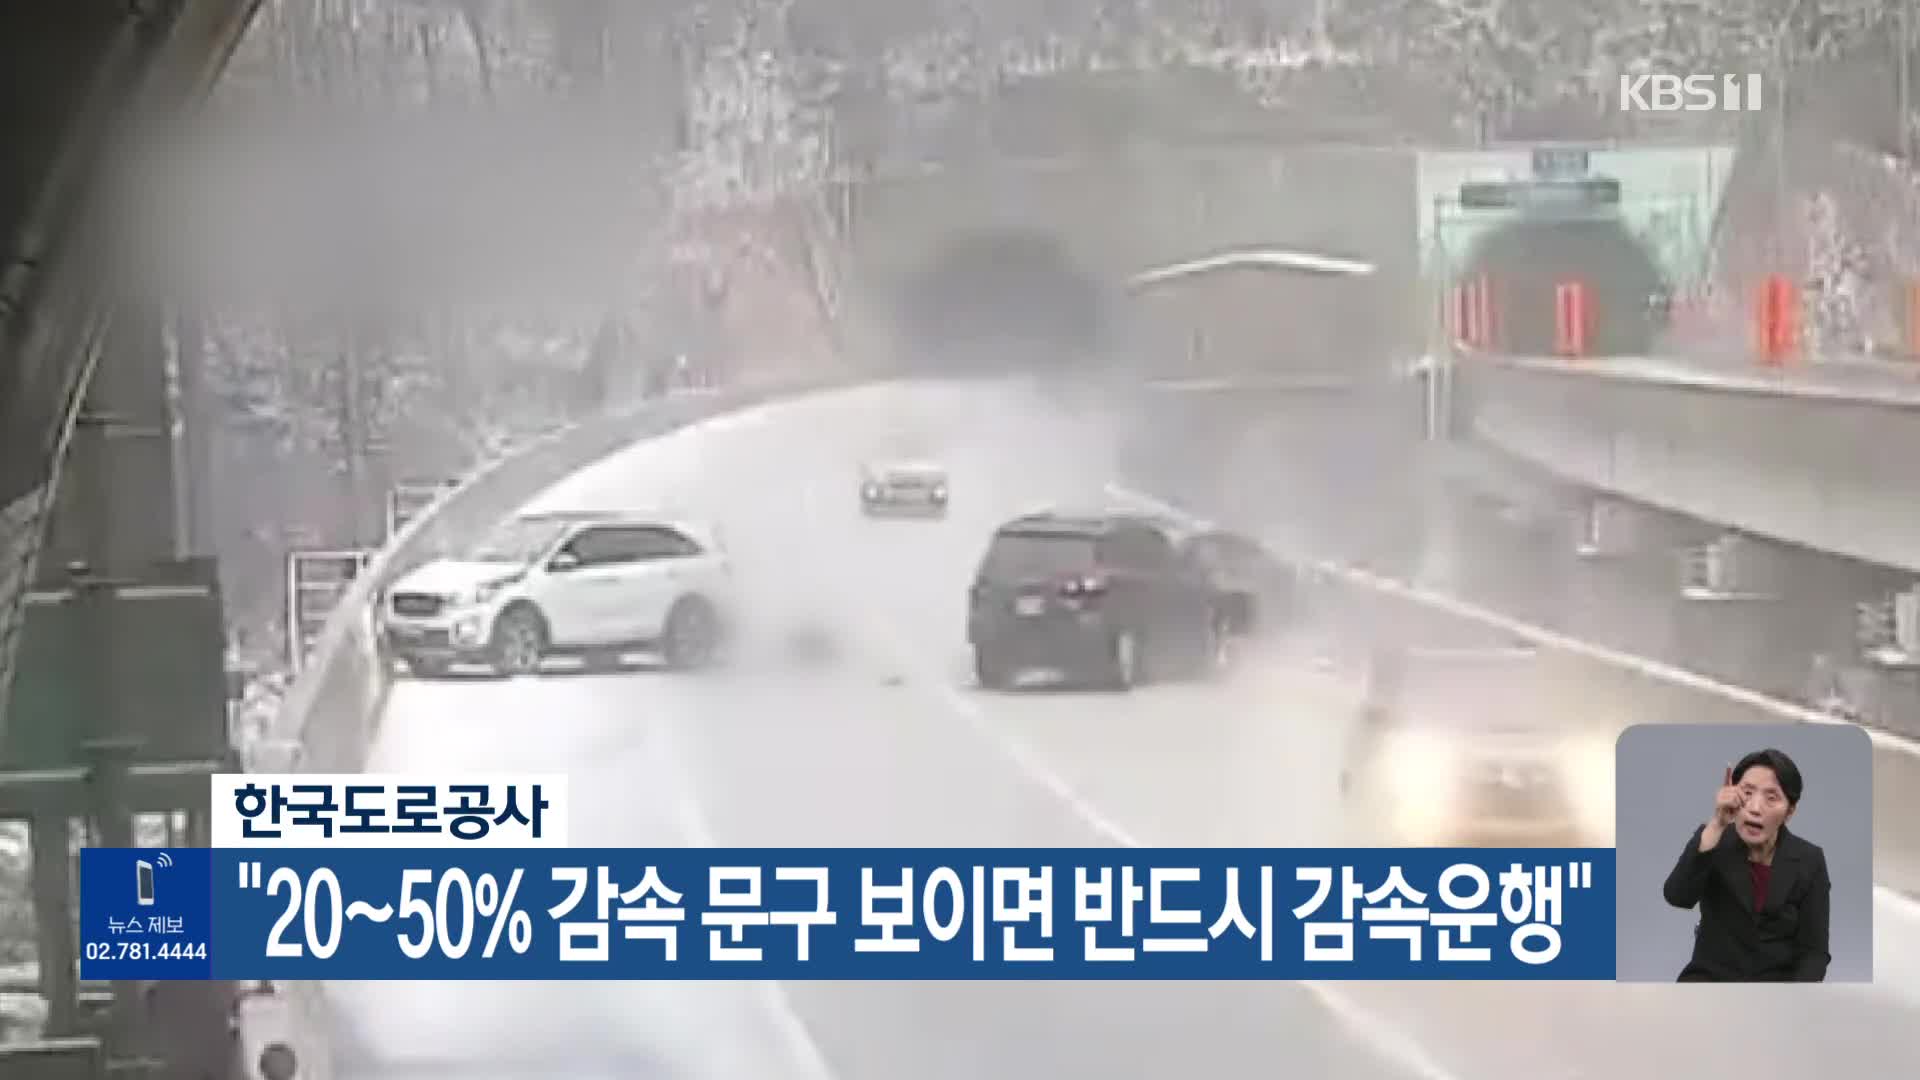 한국도로공사 “20~50% 감속 문구 보이면 반드시 감속운행”